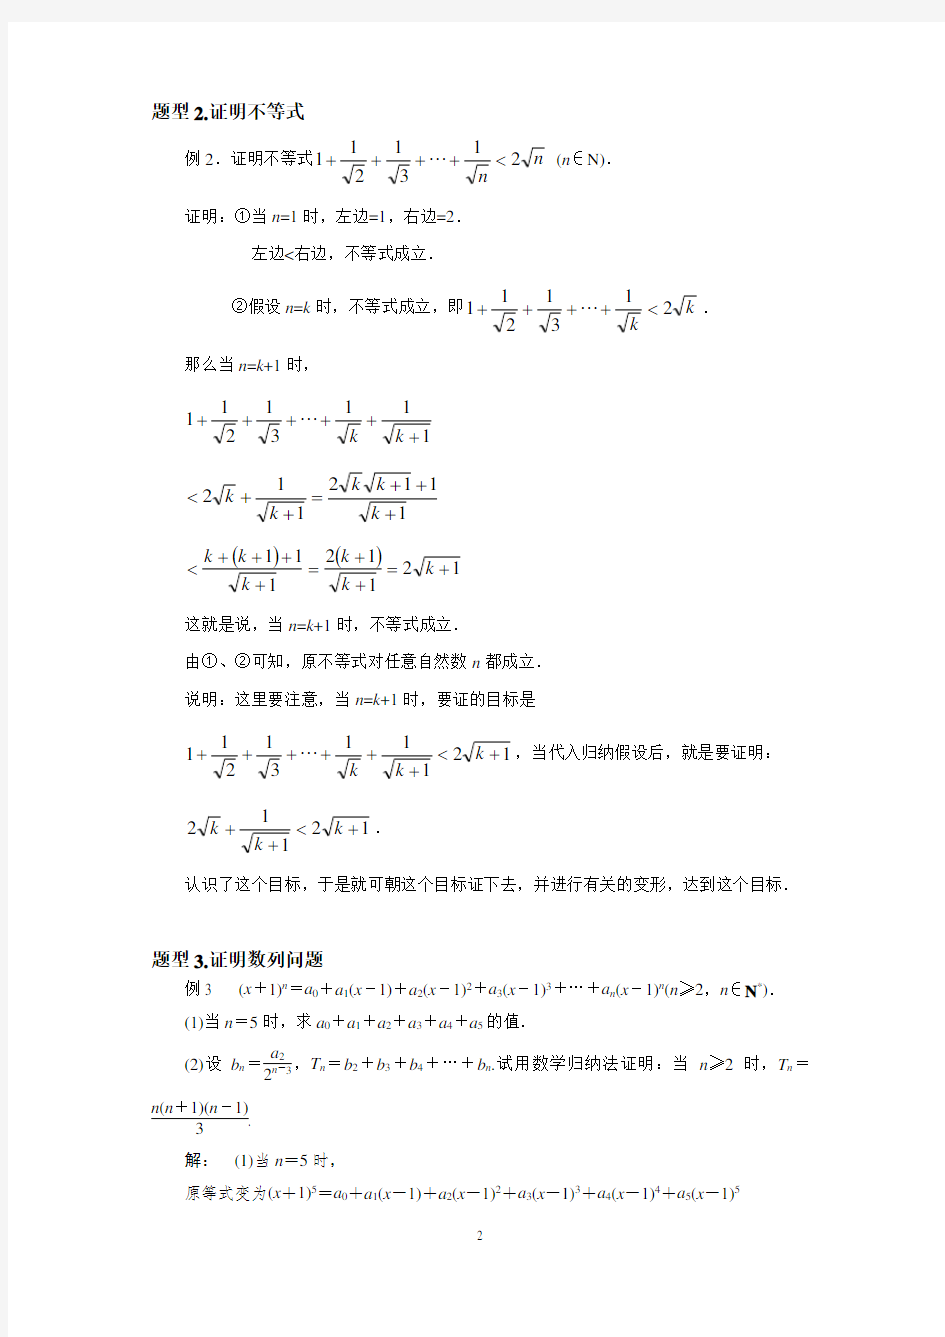 (完整版)数学归纳法经典例题及答案(2)